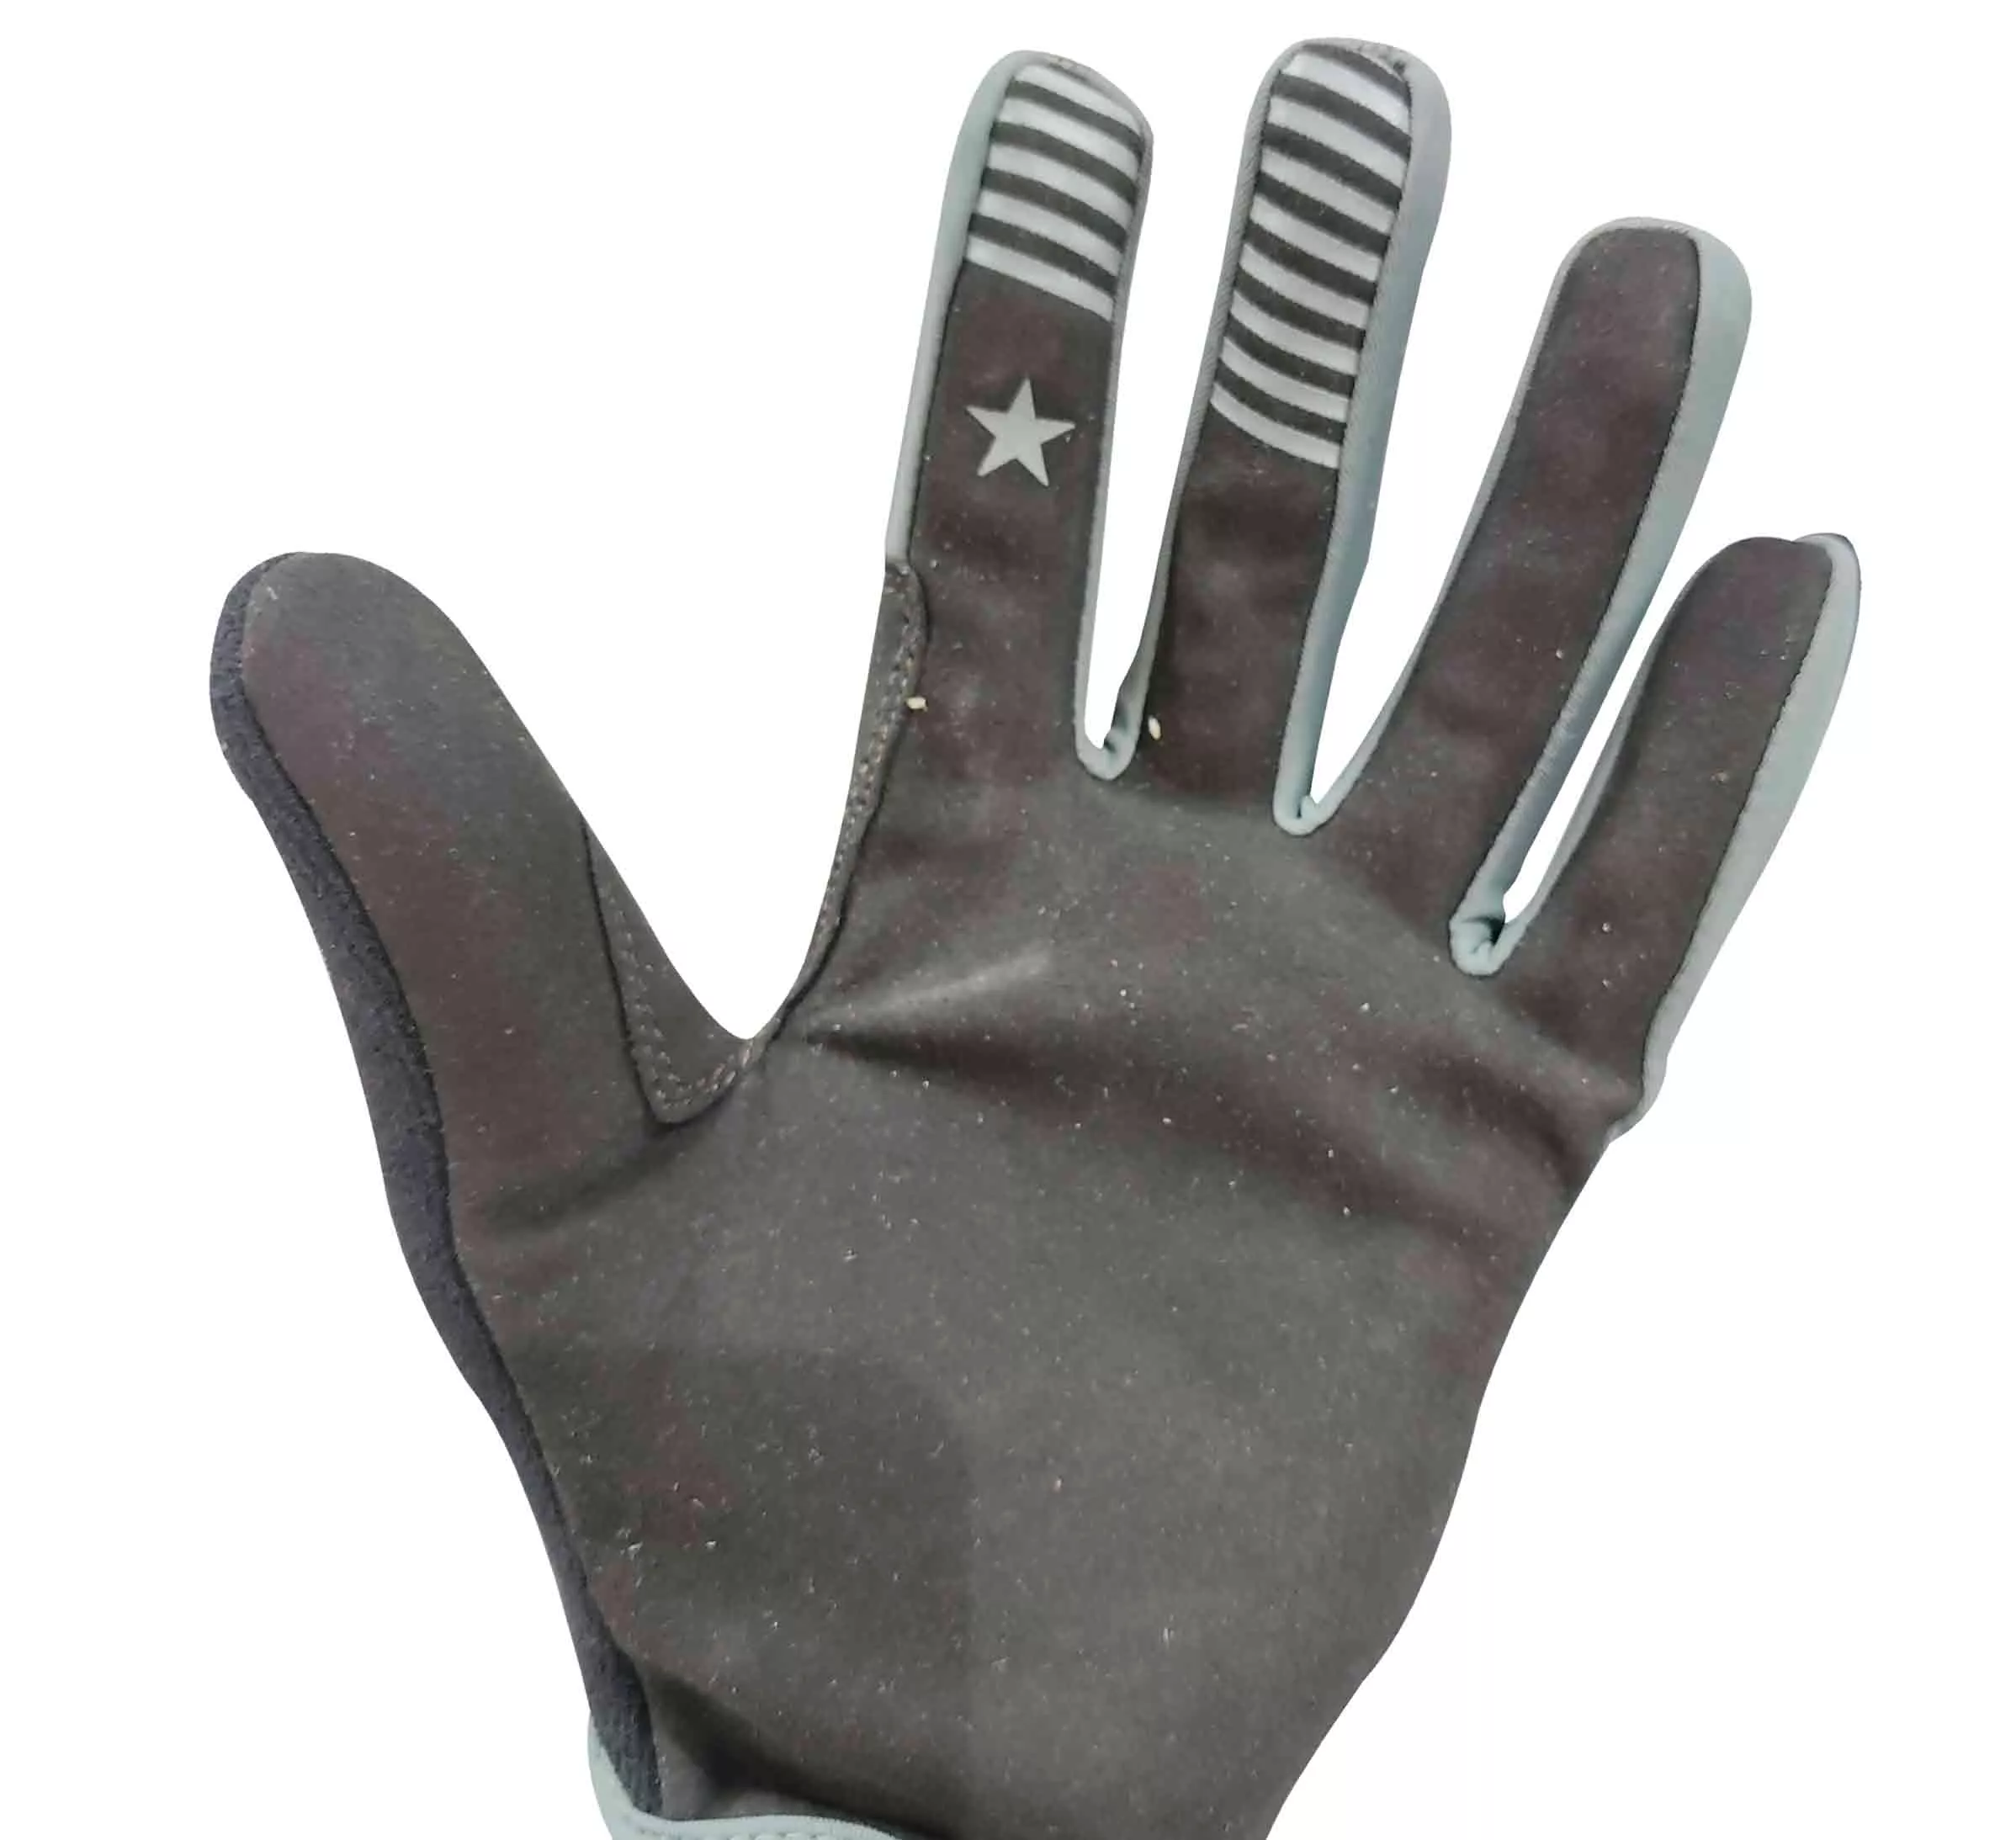 Marin guantes de Bicicleta Dedo Completo Nilon Poliester Gris